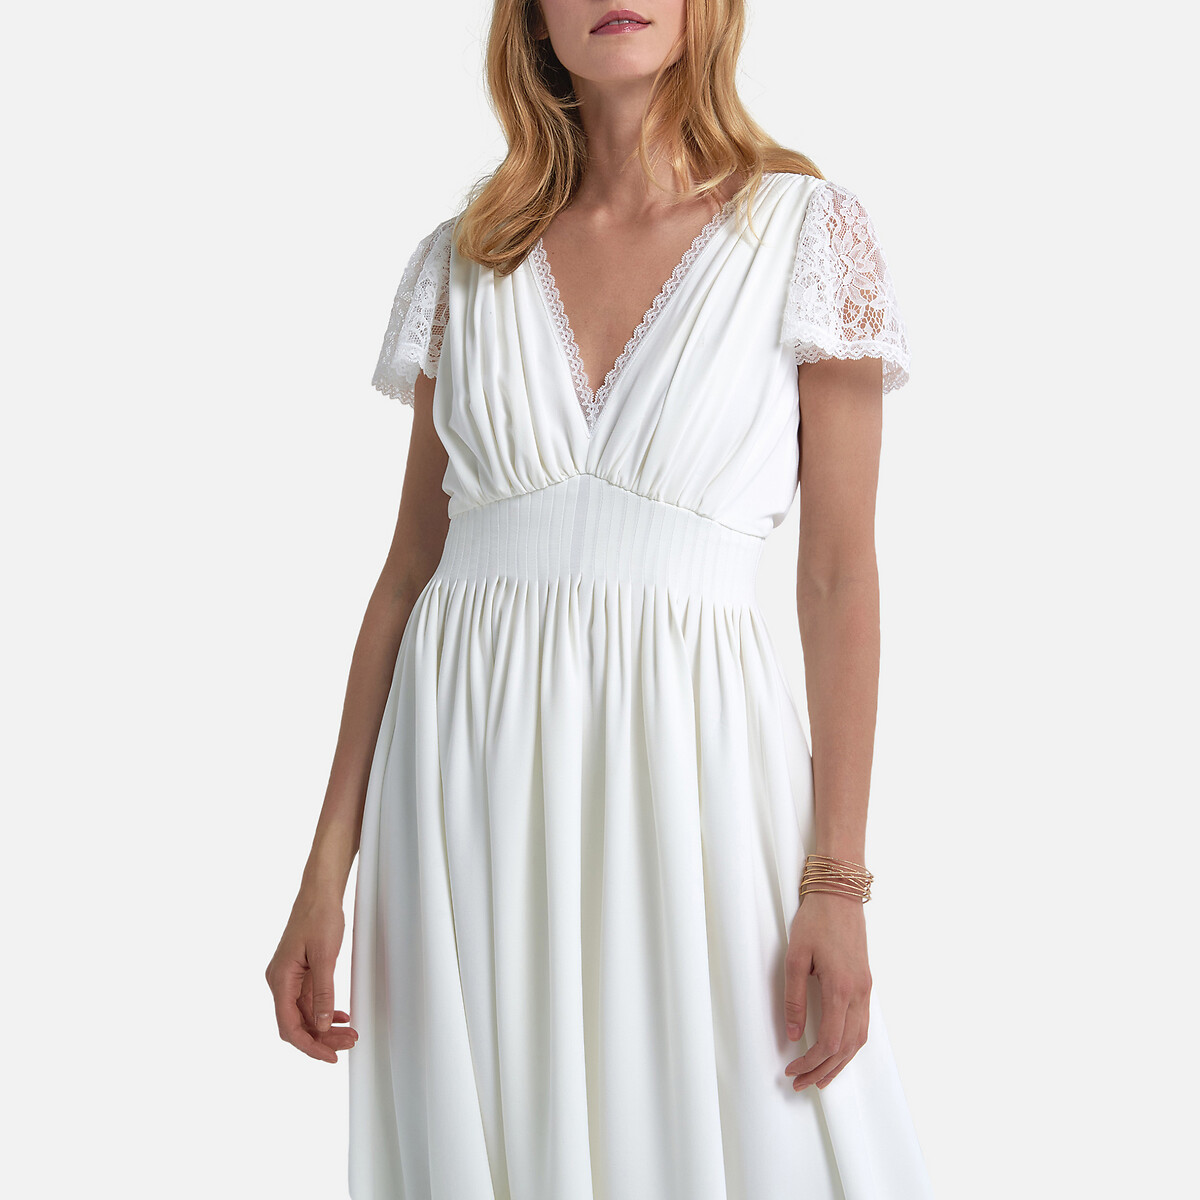 Платье La Redoute Невесты длинное короткие кружевные рукава 42 (FR) - 48 (RUS) белый, размер 42 (FR) - 48 (RUS) Невесты длинное короткие кружевные рукава 42 (FR) - 48 (RUS) белый - фото 4